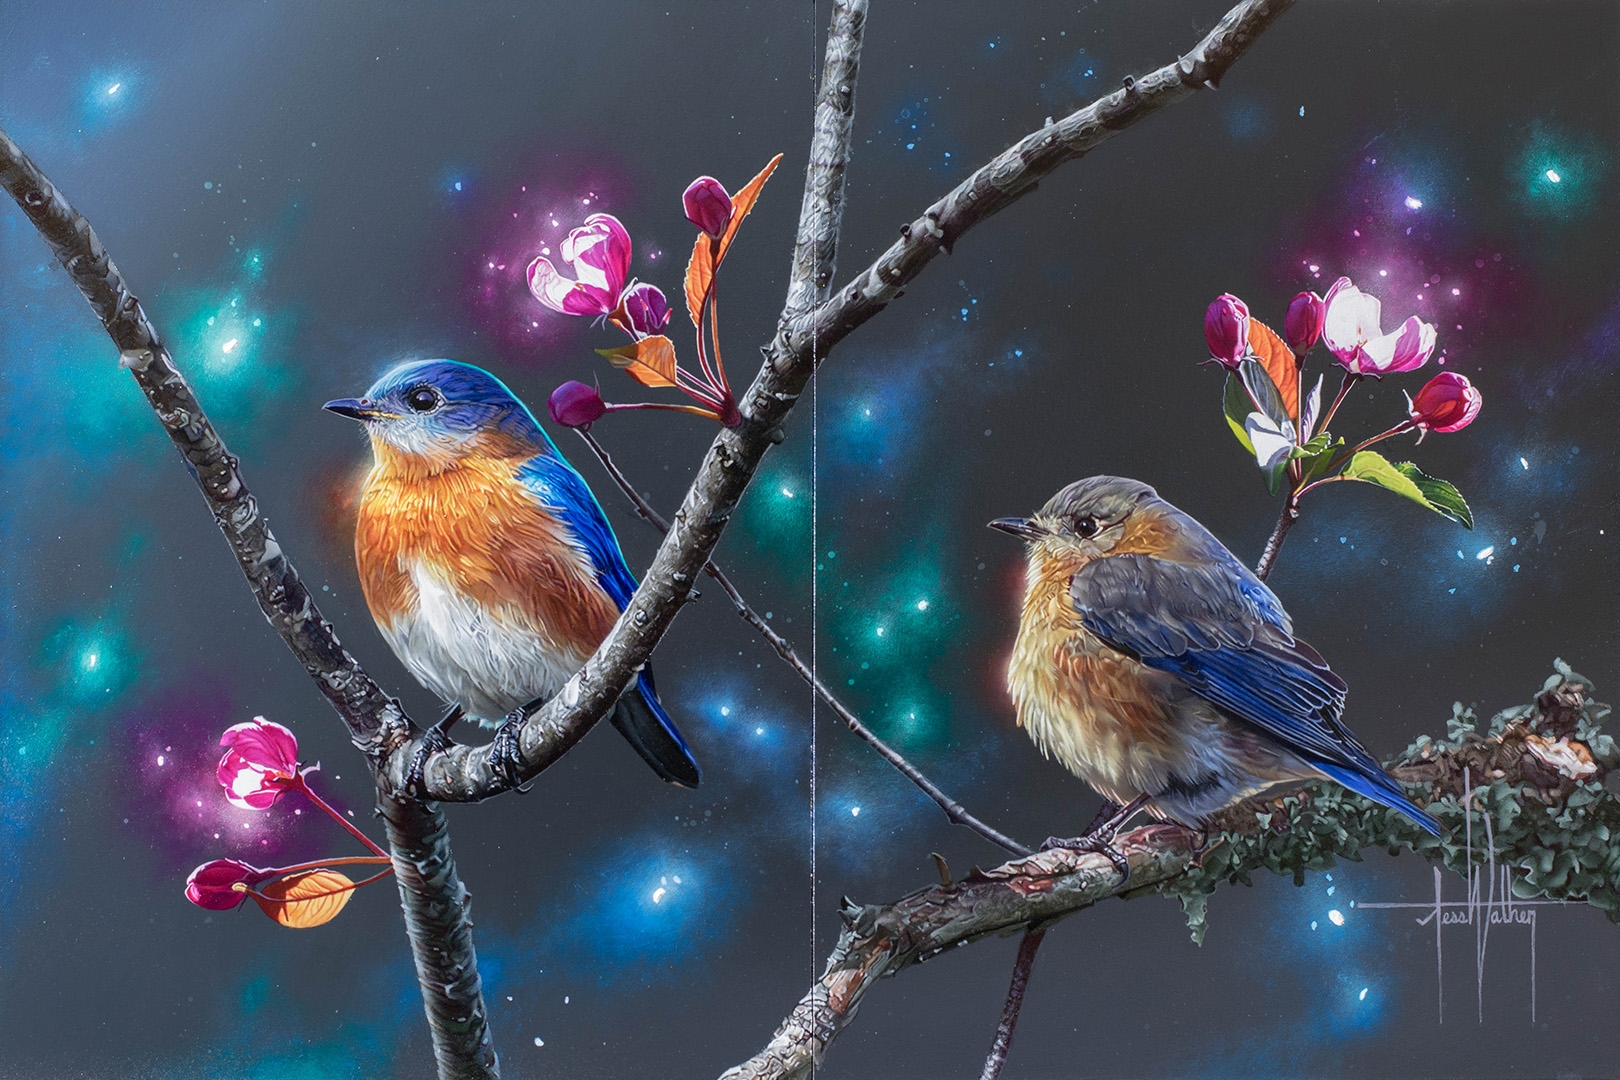 Male and Female Eastern Bluebirds in a Tree by Jess Wathen